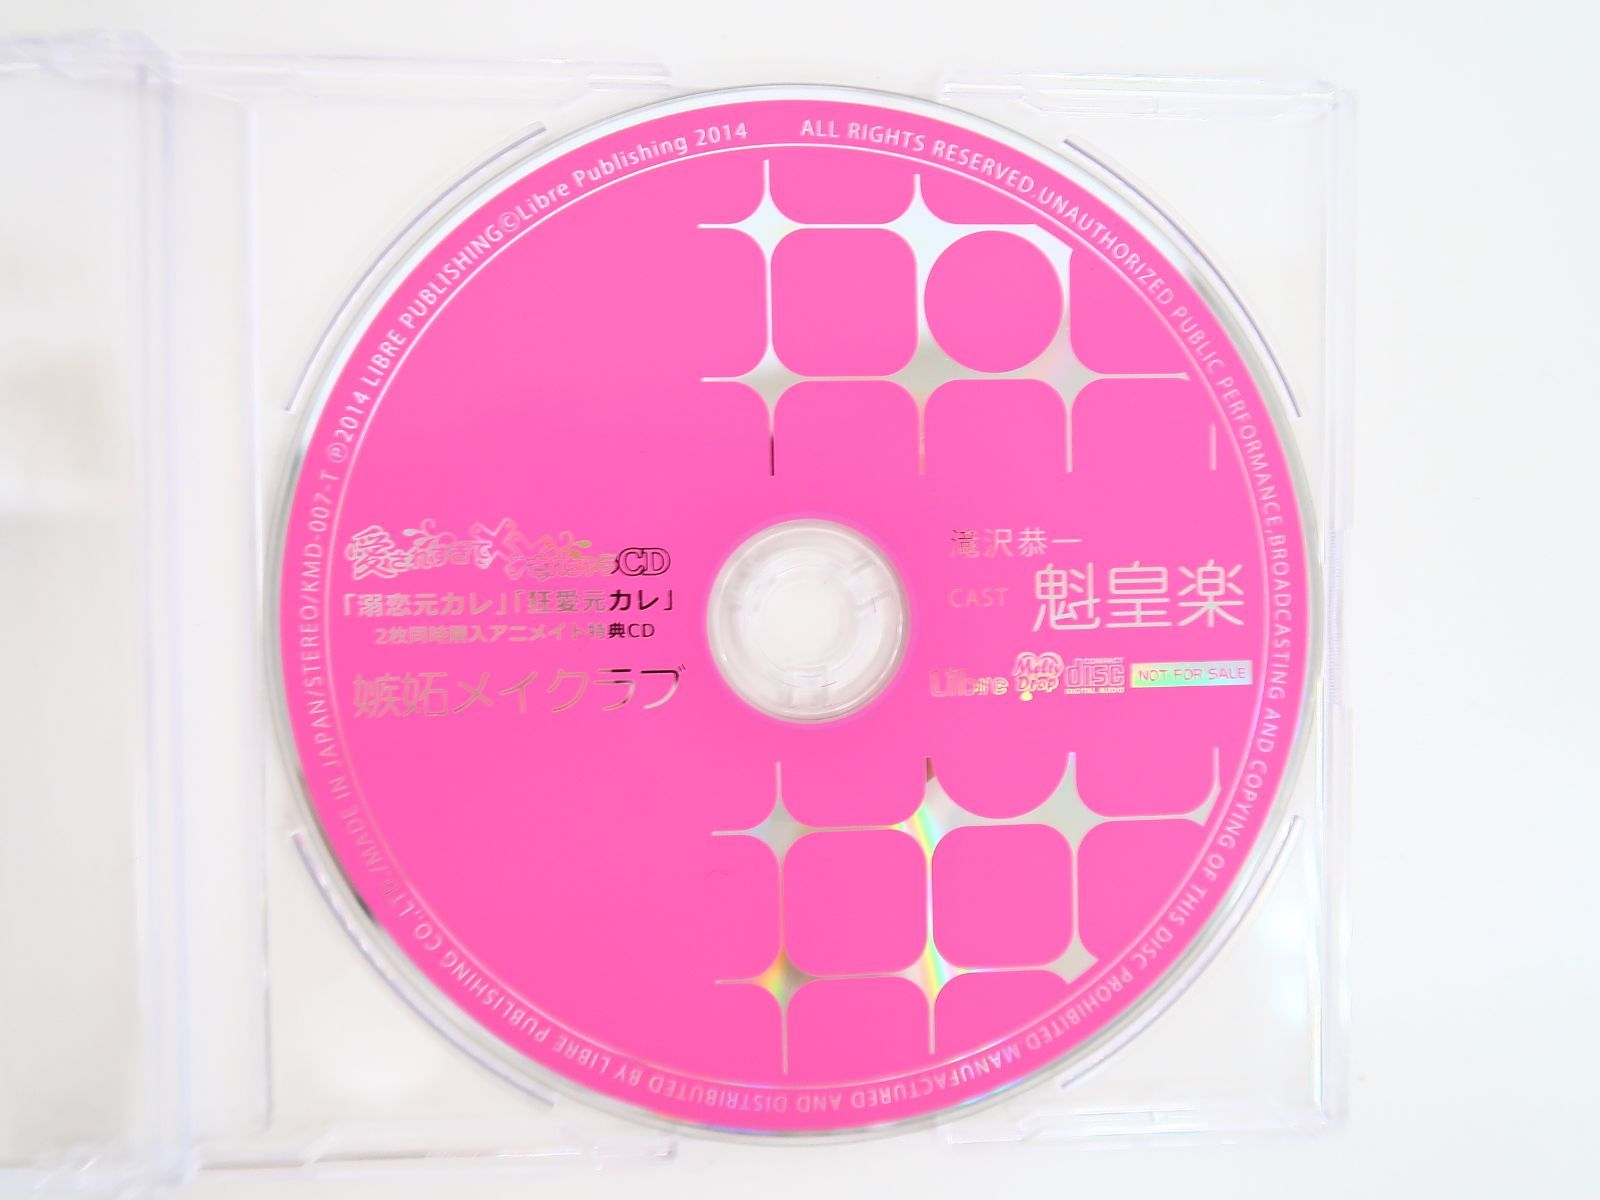 愛されすぎて××されちゃうCD ２枚同時購入アニメイト特典CD「嫉妬メイクラブ」魁皇楽